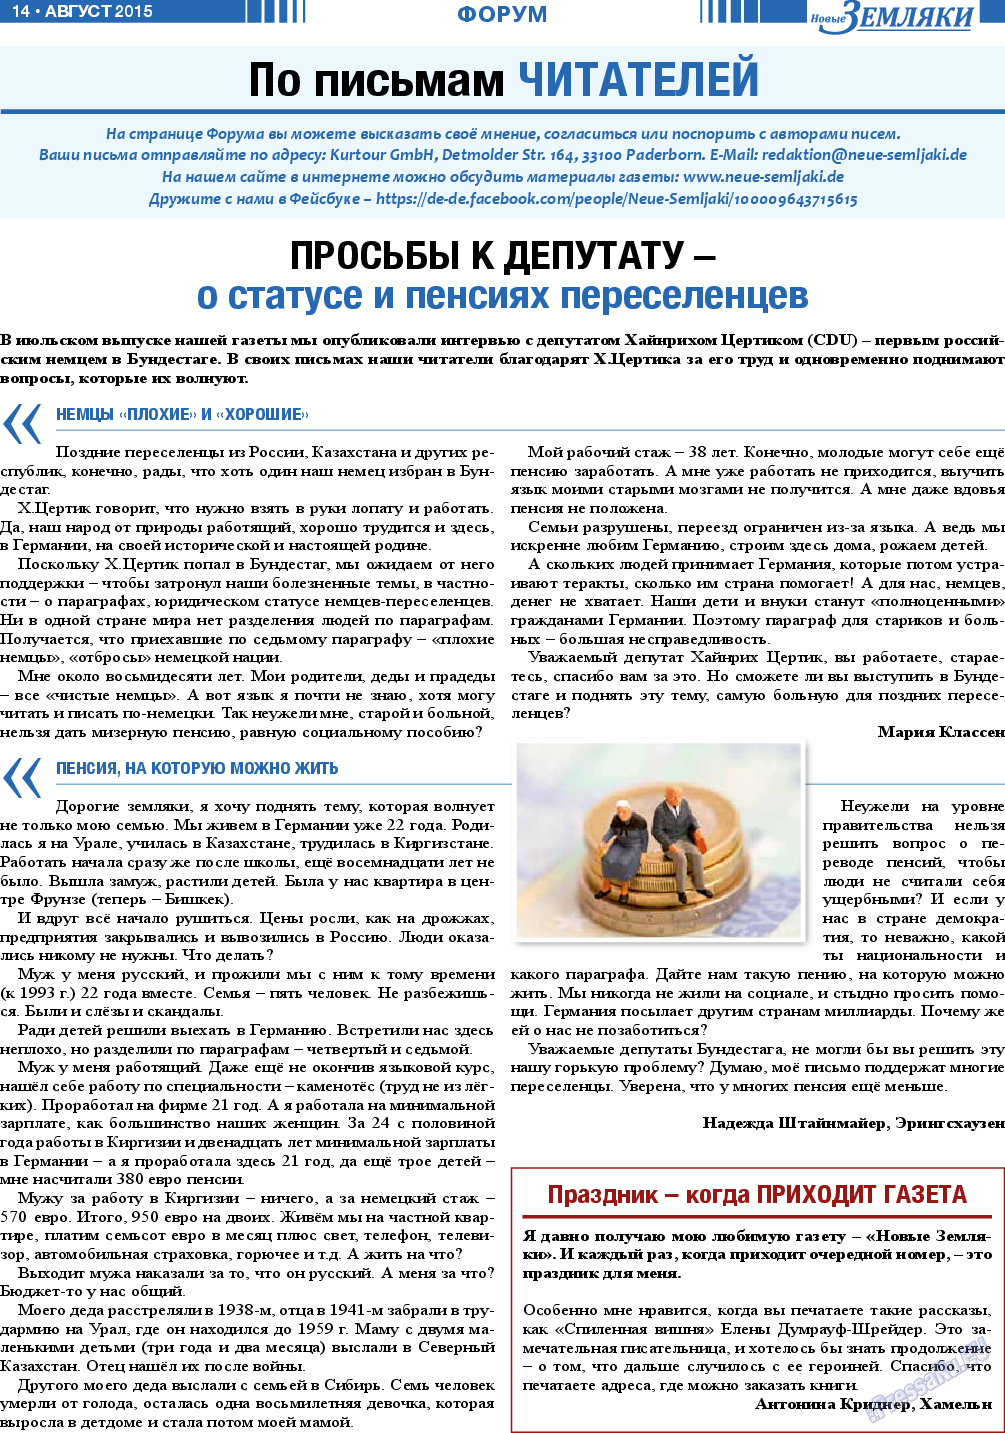 Новые Земляки, газета. 2015 №8 стр.14